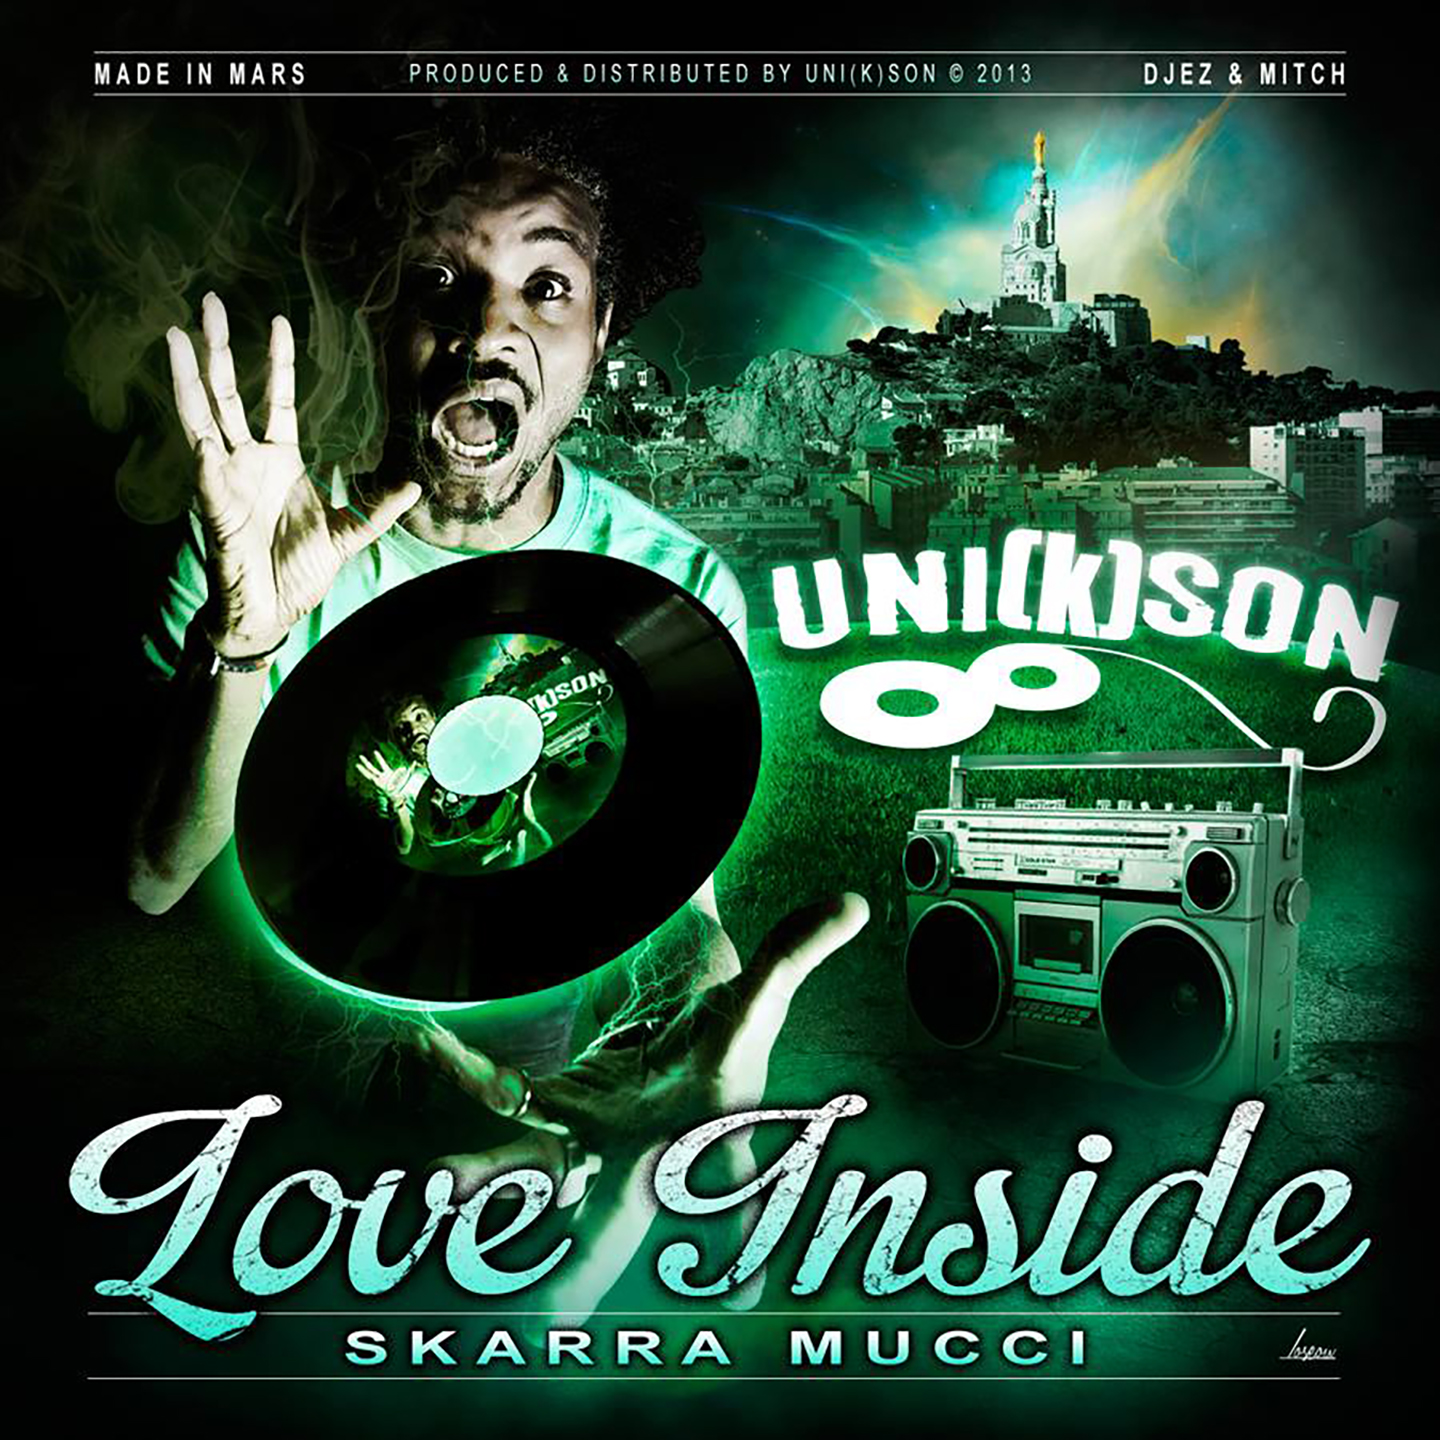 Cover du single de Skarra Mucci - Love Inside. Réalisé par Loseou